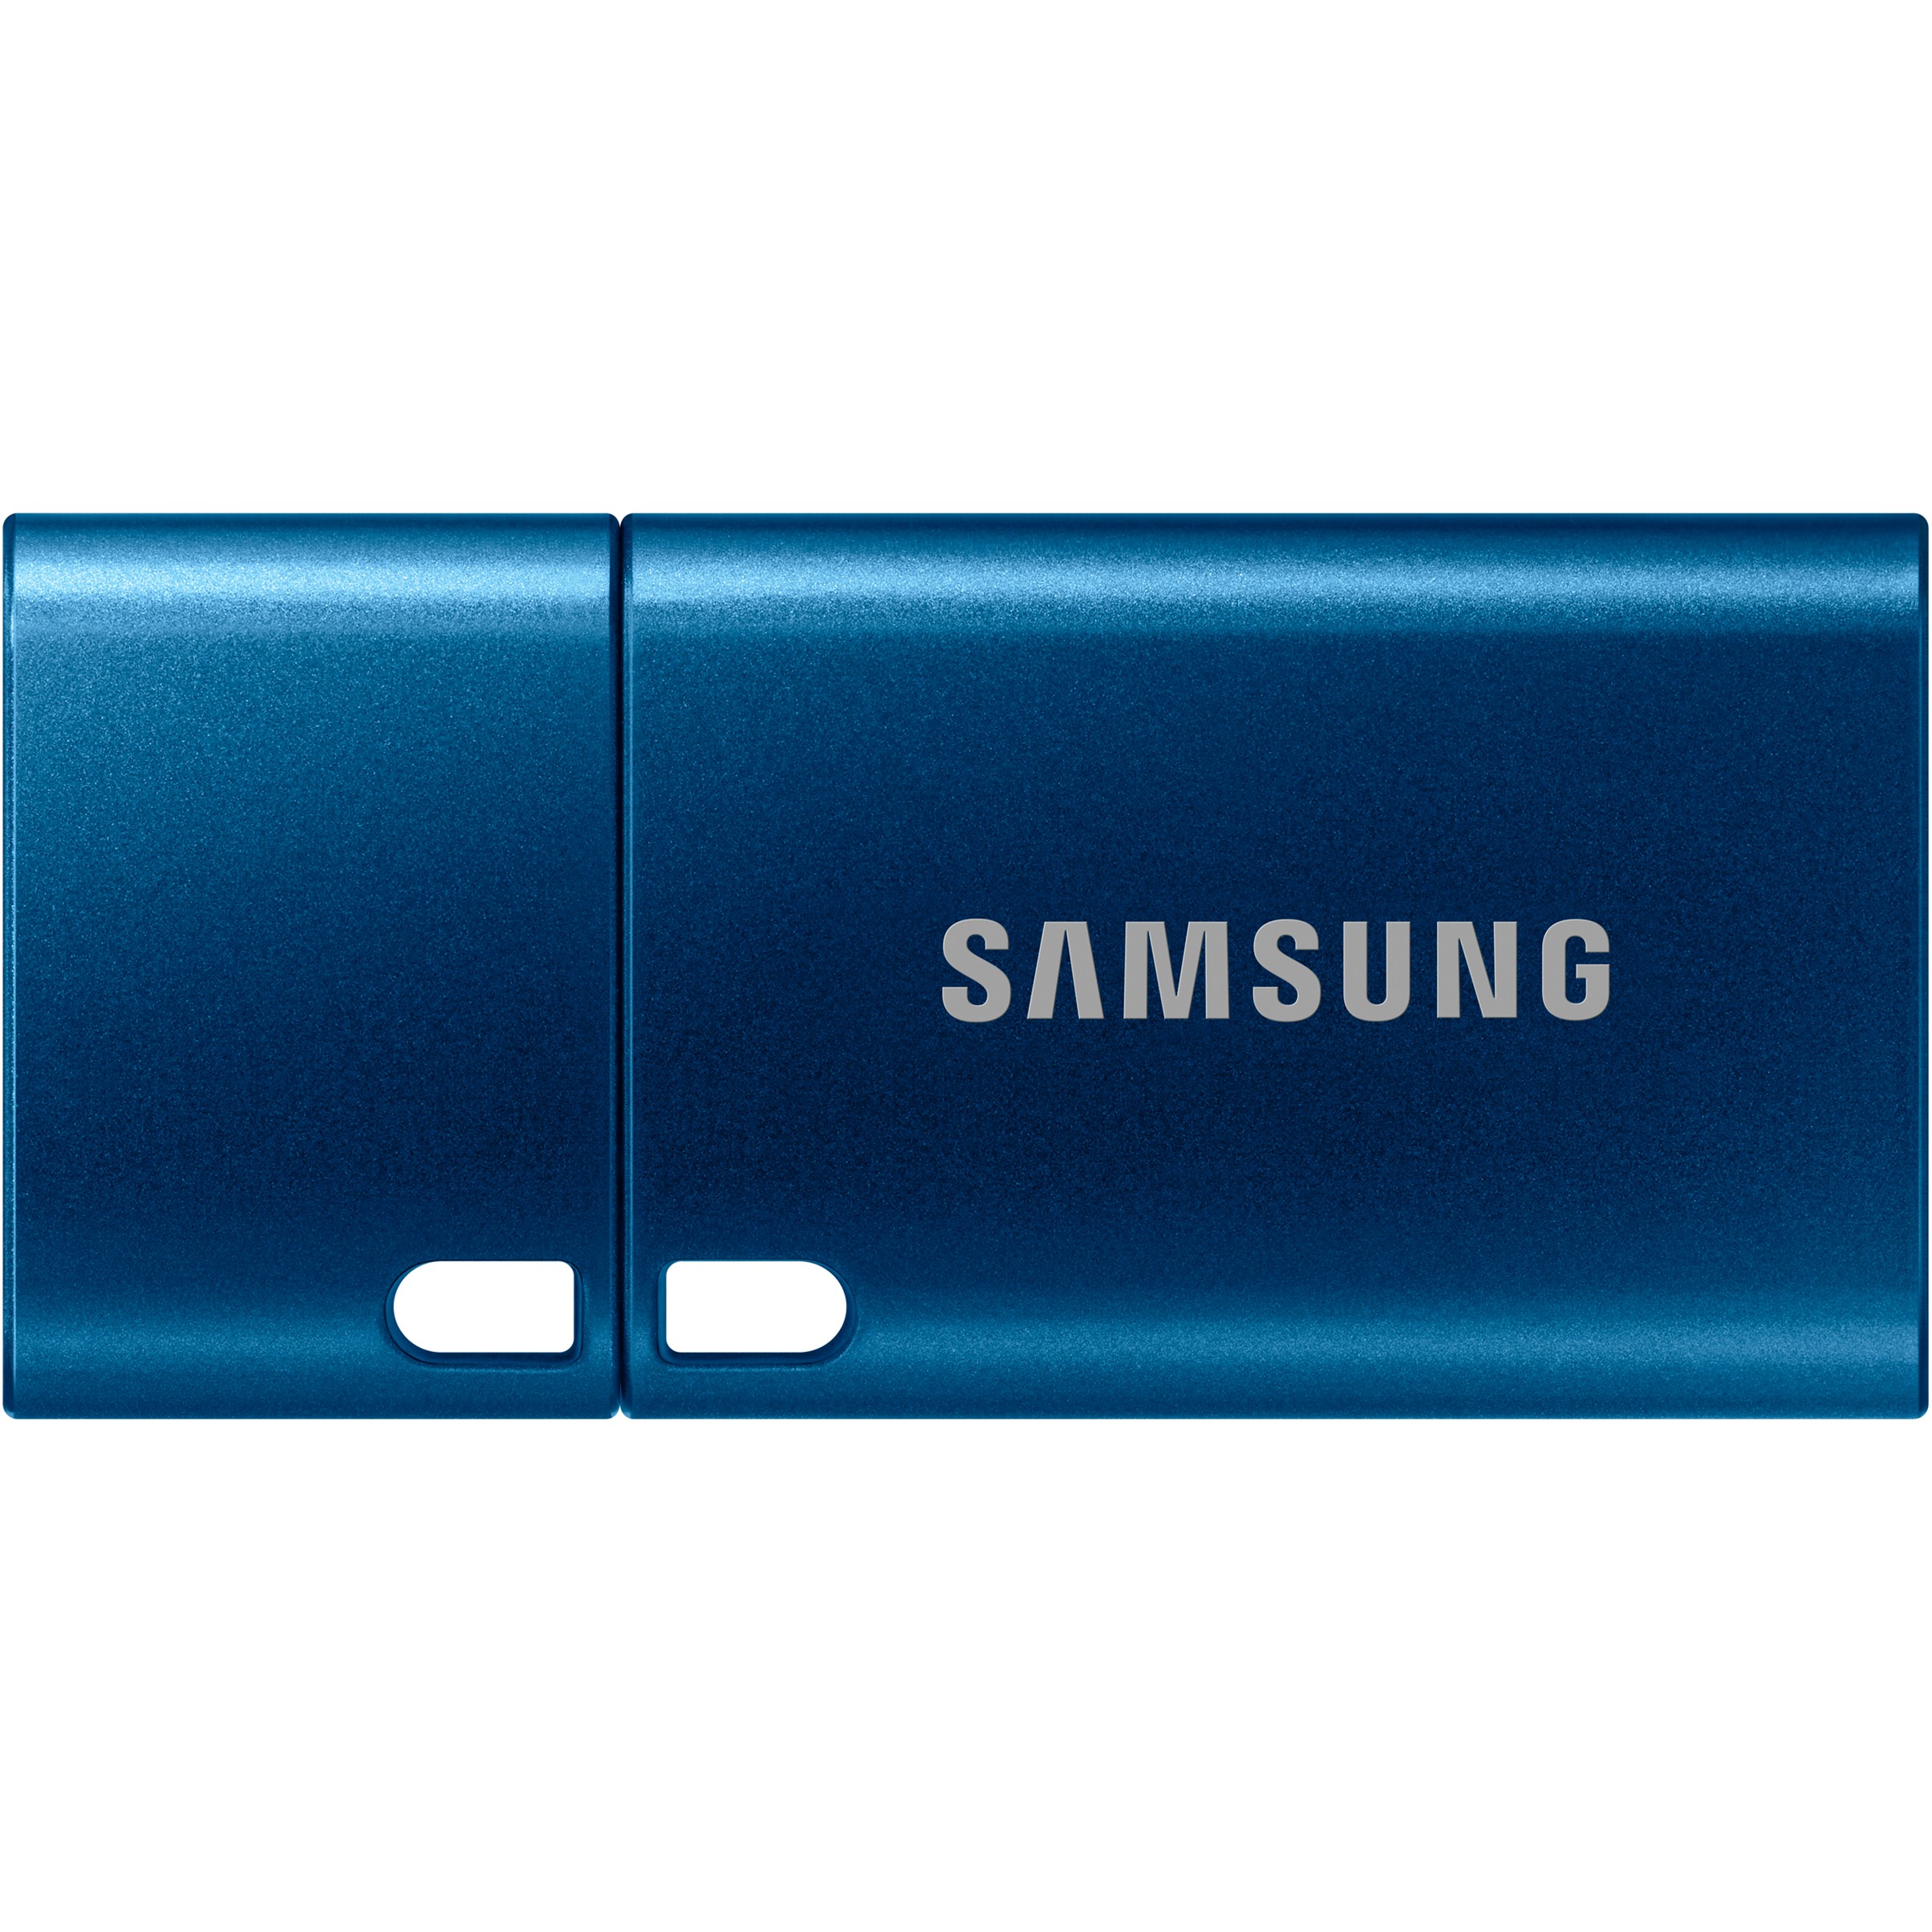 Samsung MUF-128DA USB flash drive